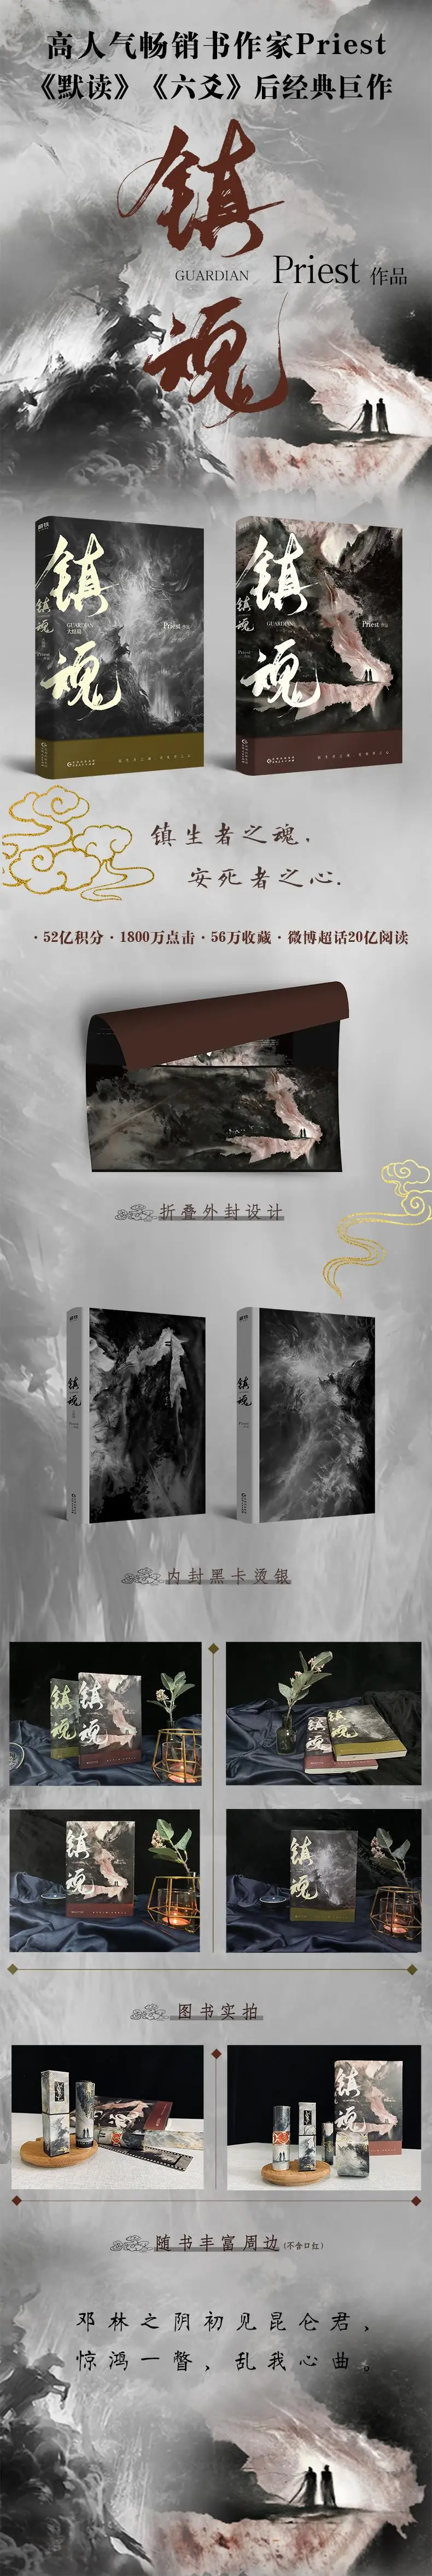 2 шт./компл. Zhen Hun Guardian китайская новая книга, жрец, художественная книга, фэнтези,, официальная книга